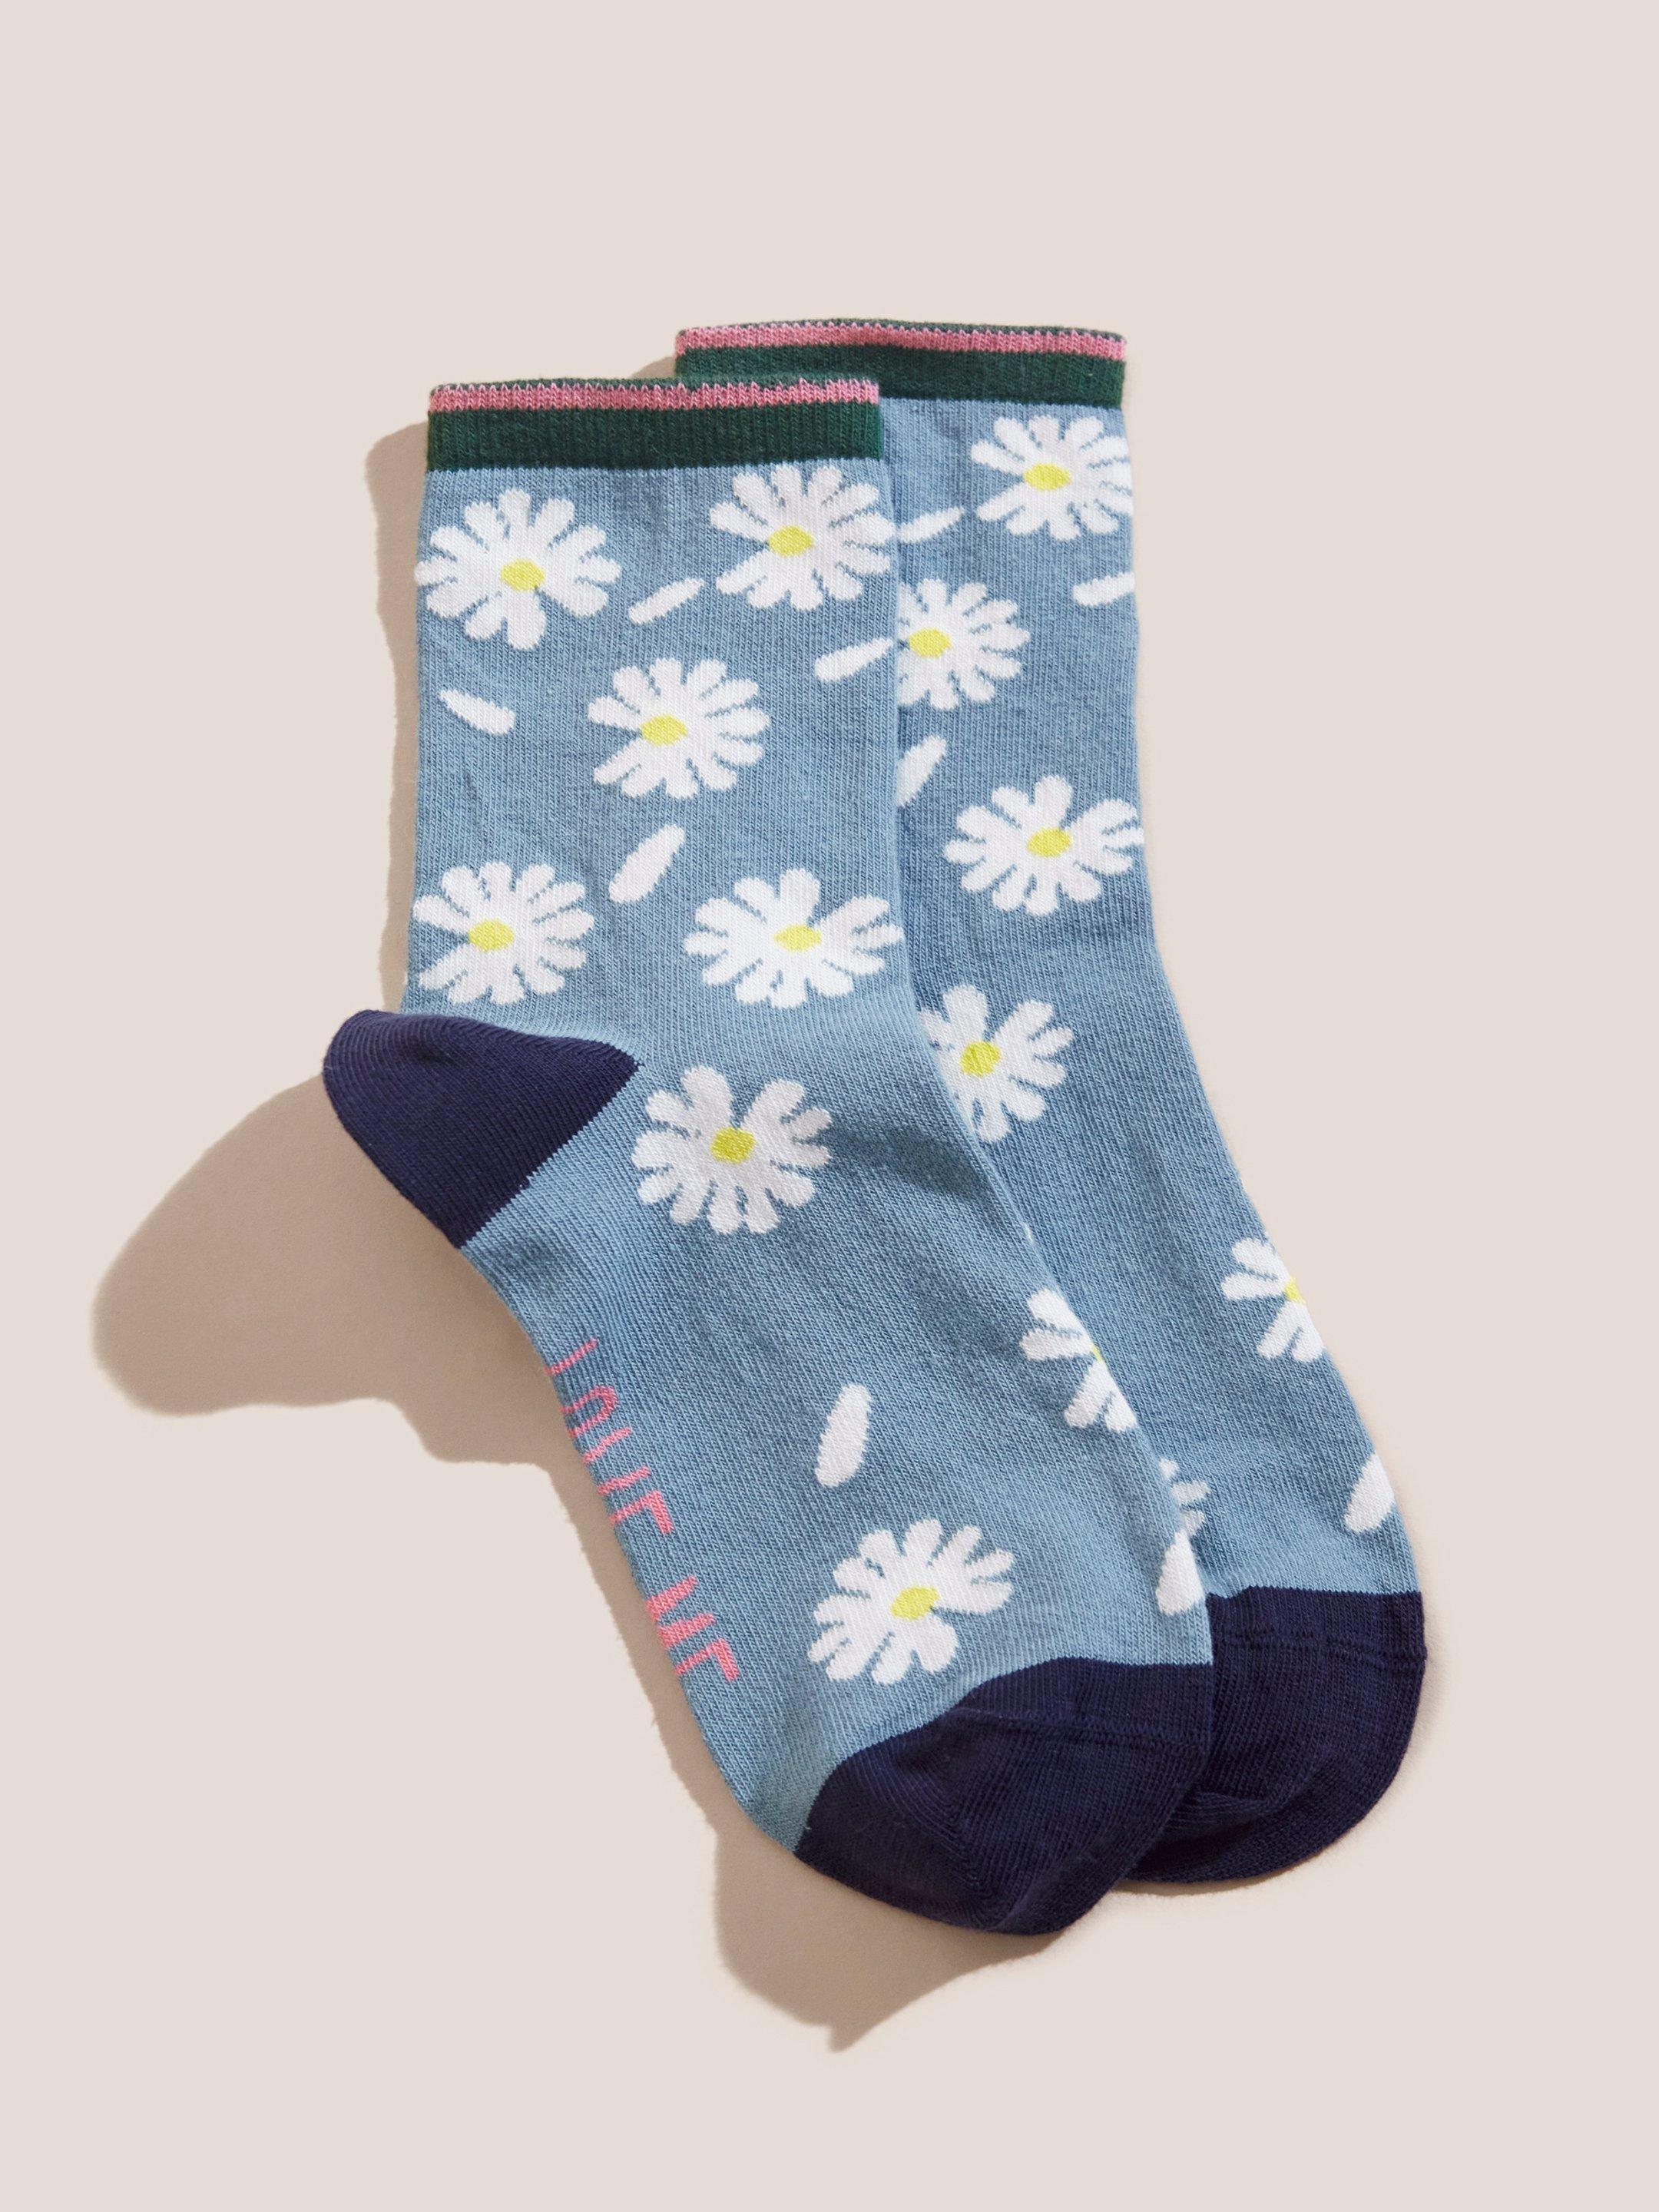 Falling Petal Daisy Socks